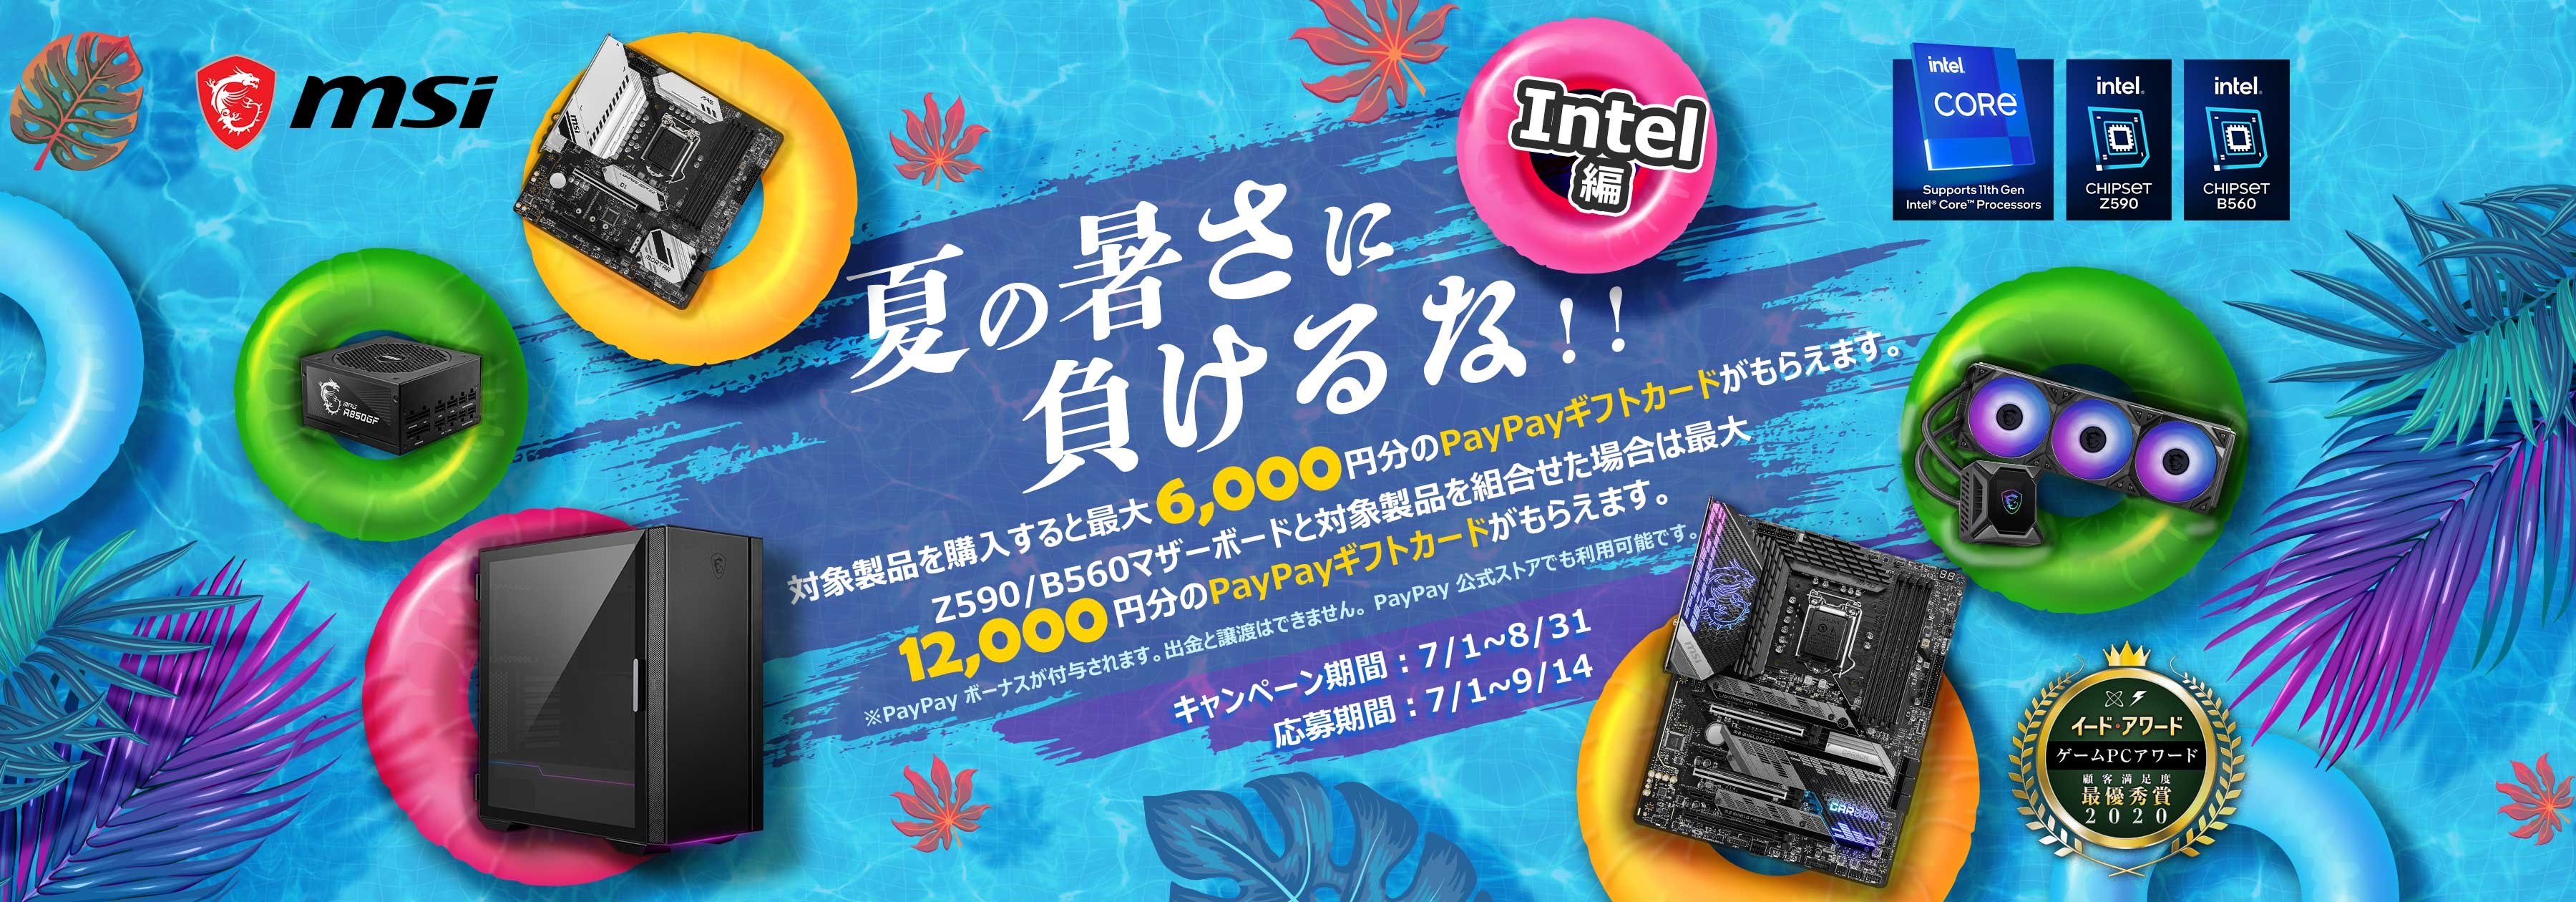 【必ずもらえる！】MSI製品を購入すると最大12,000円分のPayPayギフトカードが貰える「夏の暑さに負けるな!! Intel編」キャンペーン開催中！